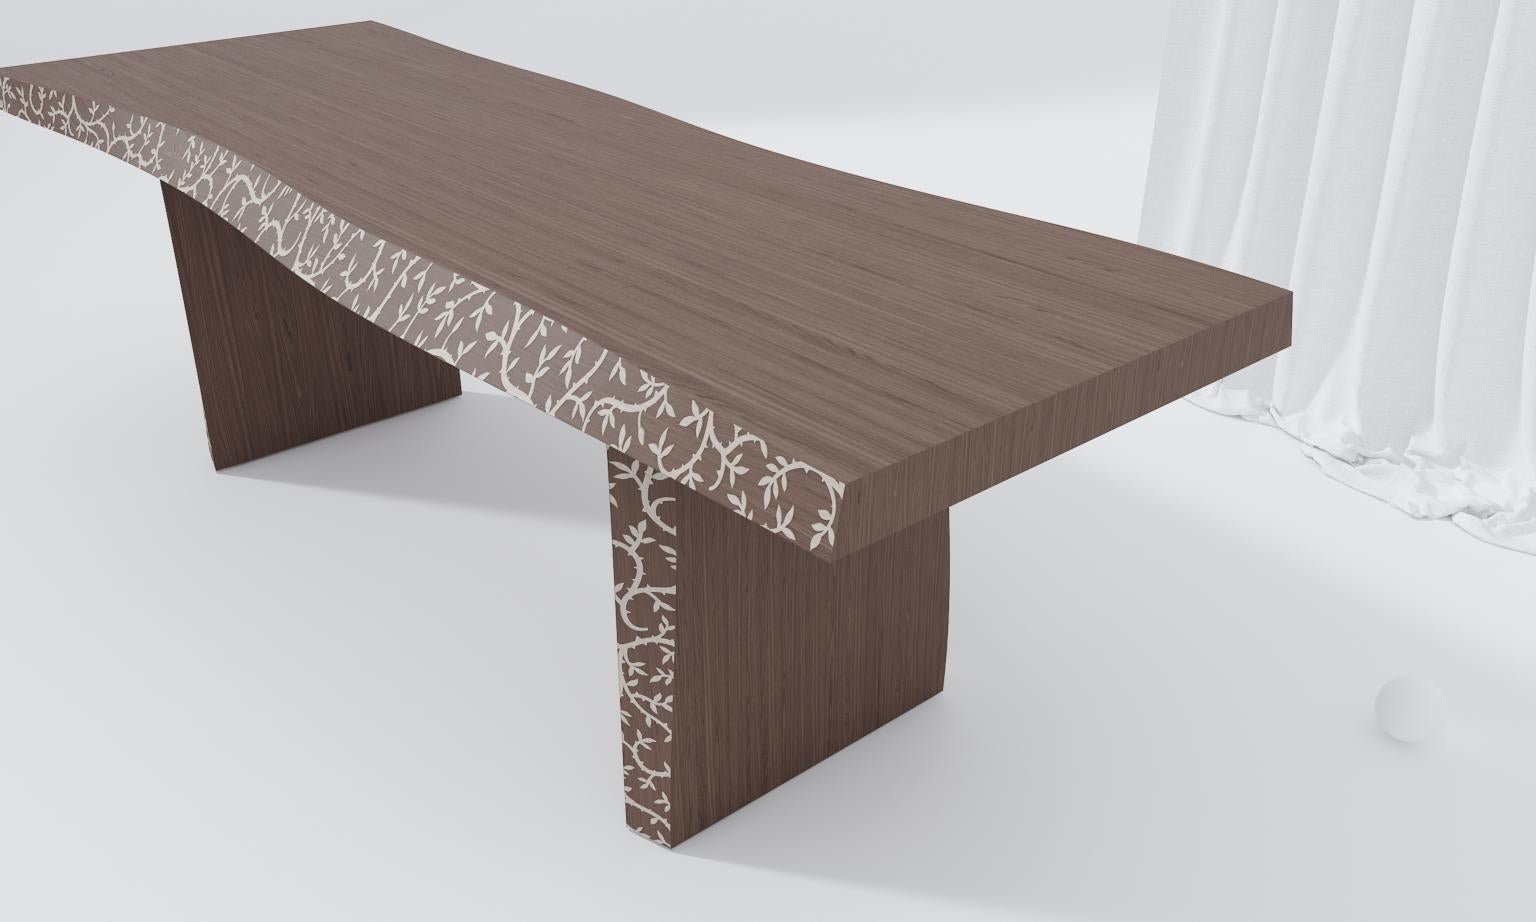 Table d'écorce
La table Bark est réalisée dans trois essences de bois et peut être utilisée dans quatre tonalités différentes. Les formes sinueuses caractérisées par des profils de ramage simulent les irrégularités de la peau. 
La table Bark Cabìn